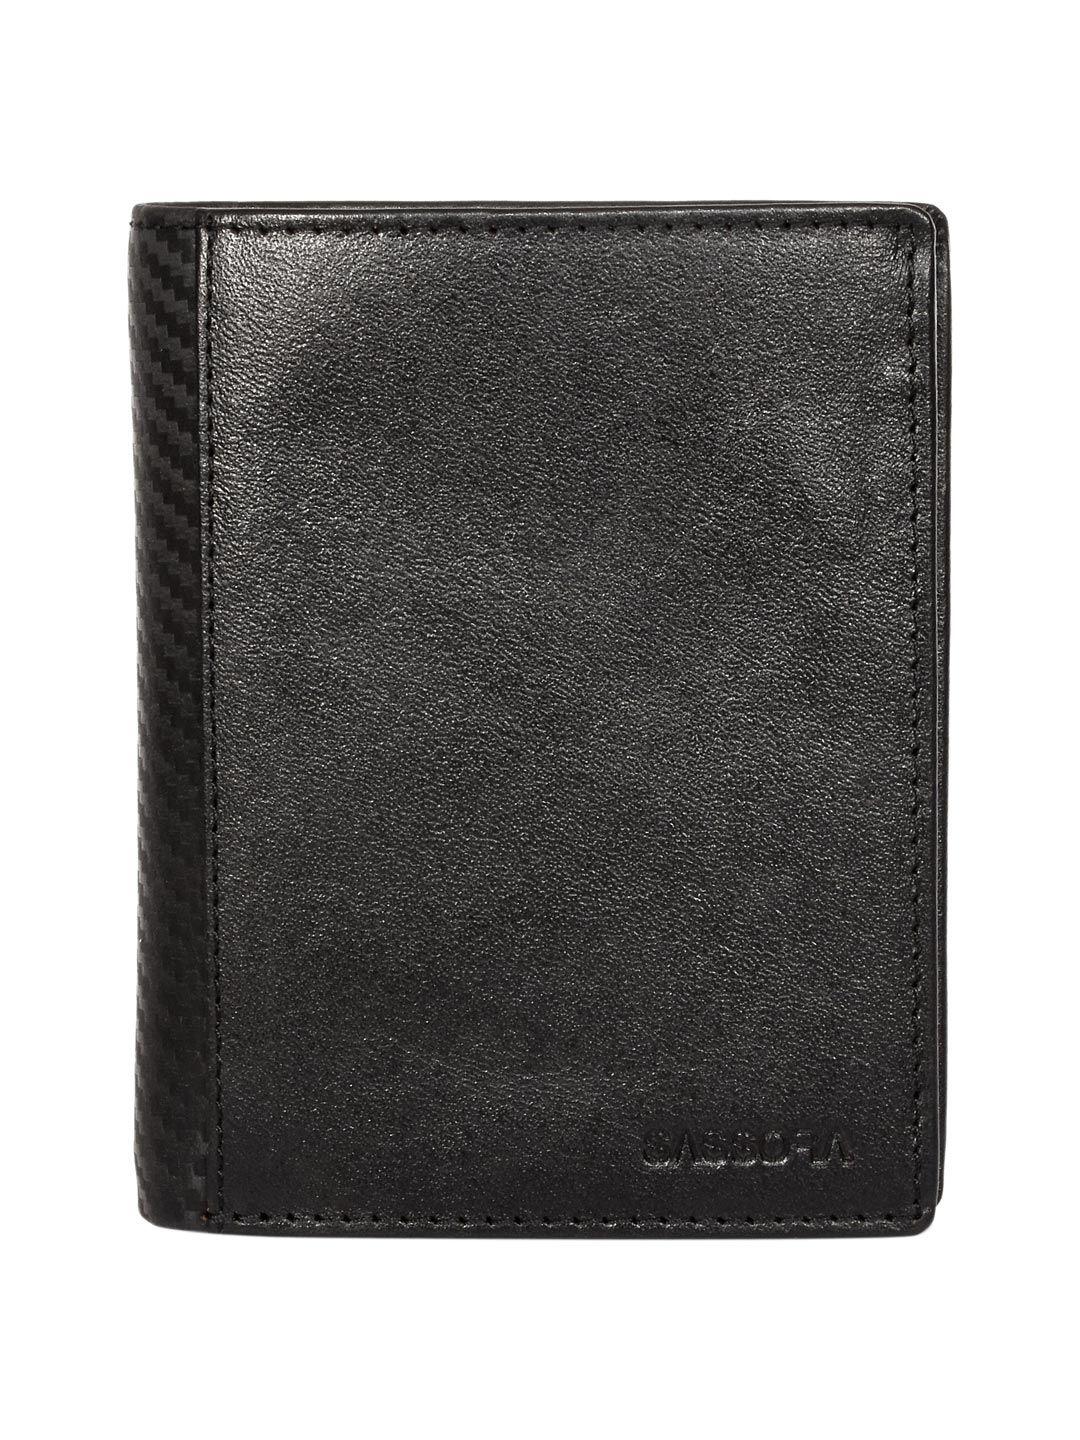 sassora men leather two fold wallet